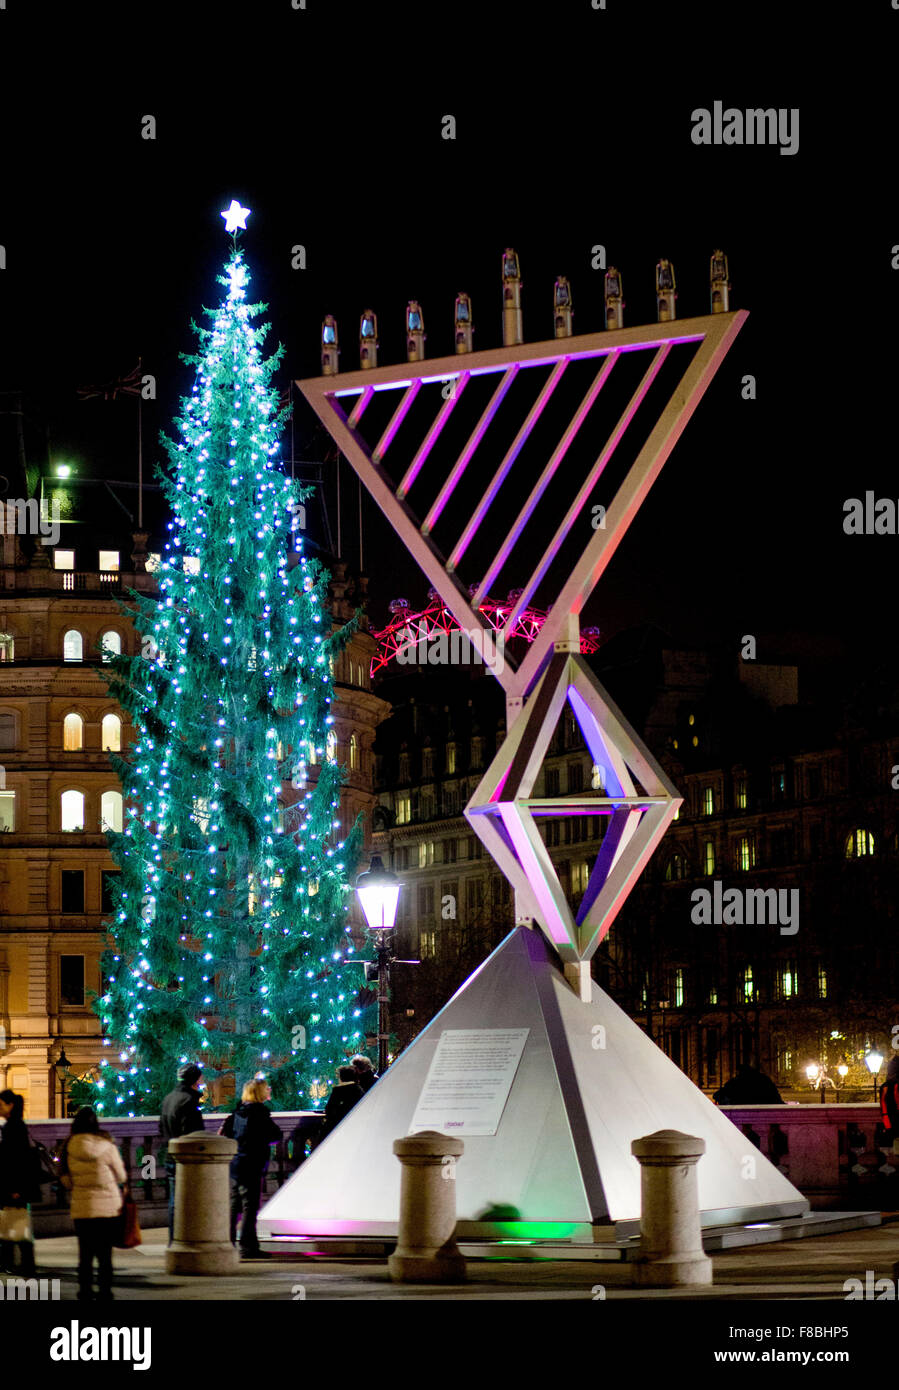 Trafalgar Square Natale albero di Natale giant menorah illuminata a  Chanukah, il festival ebraico di luci Foto stock - Alamy